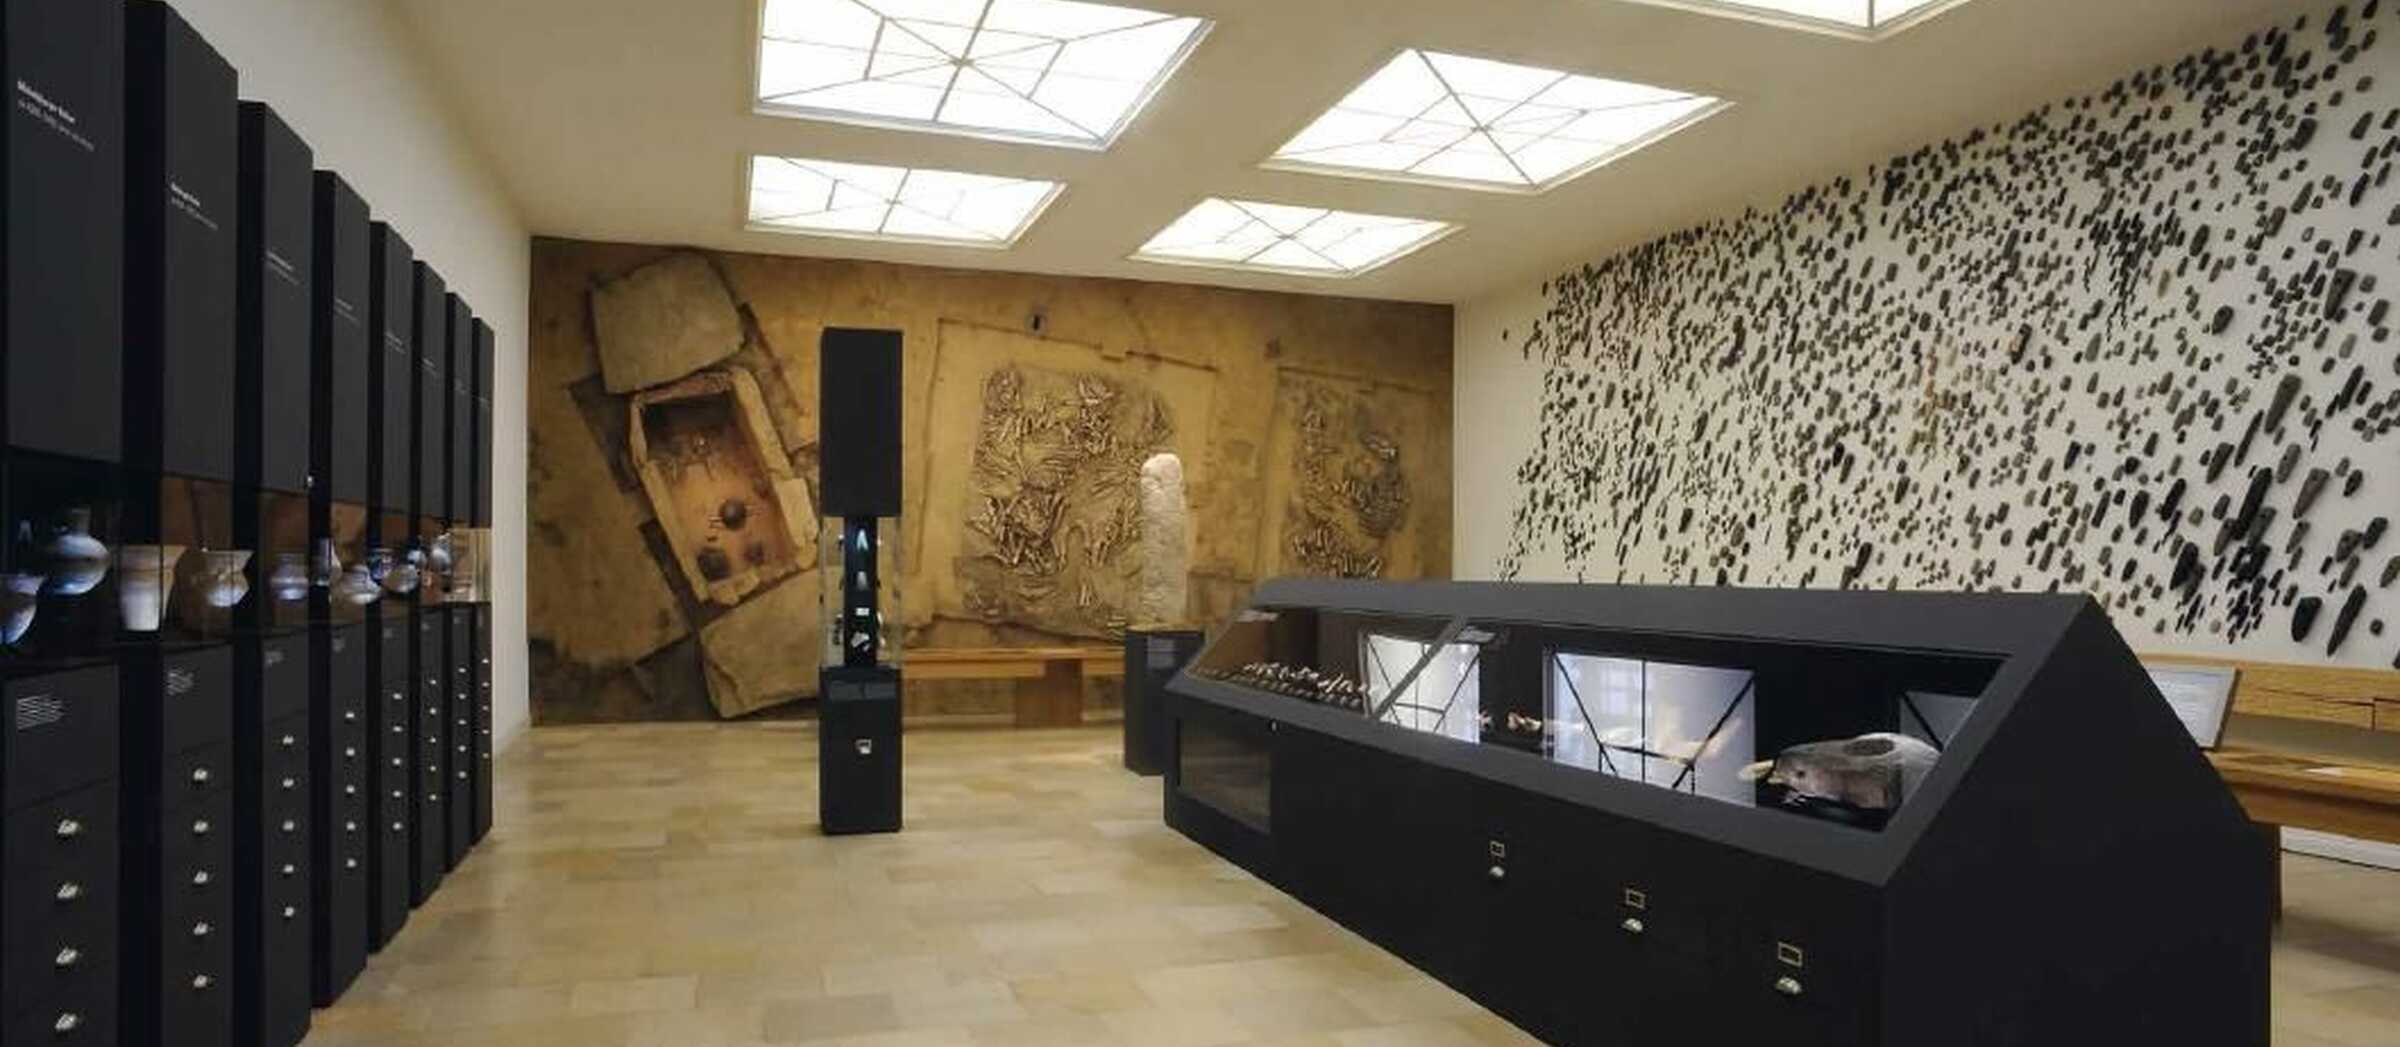 Blick in den Raum der Dauerausstellung zeigt das senkrecht an die Wand montierte Steinkistengrab des Rinderbarons von Westerhausen, mehrere Vitrinen mit archäologischen Funden sowie die lange Wand des Ausstellungssaals, die vollkommen bedeckt ist mit Steinbeilen.